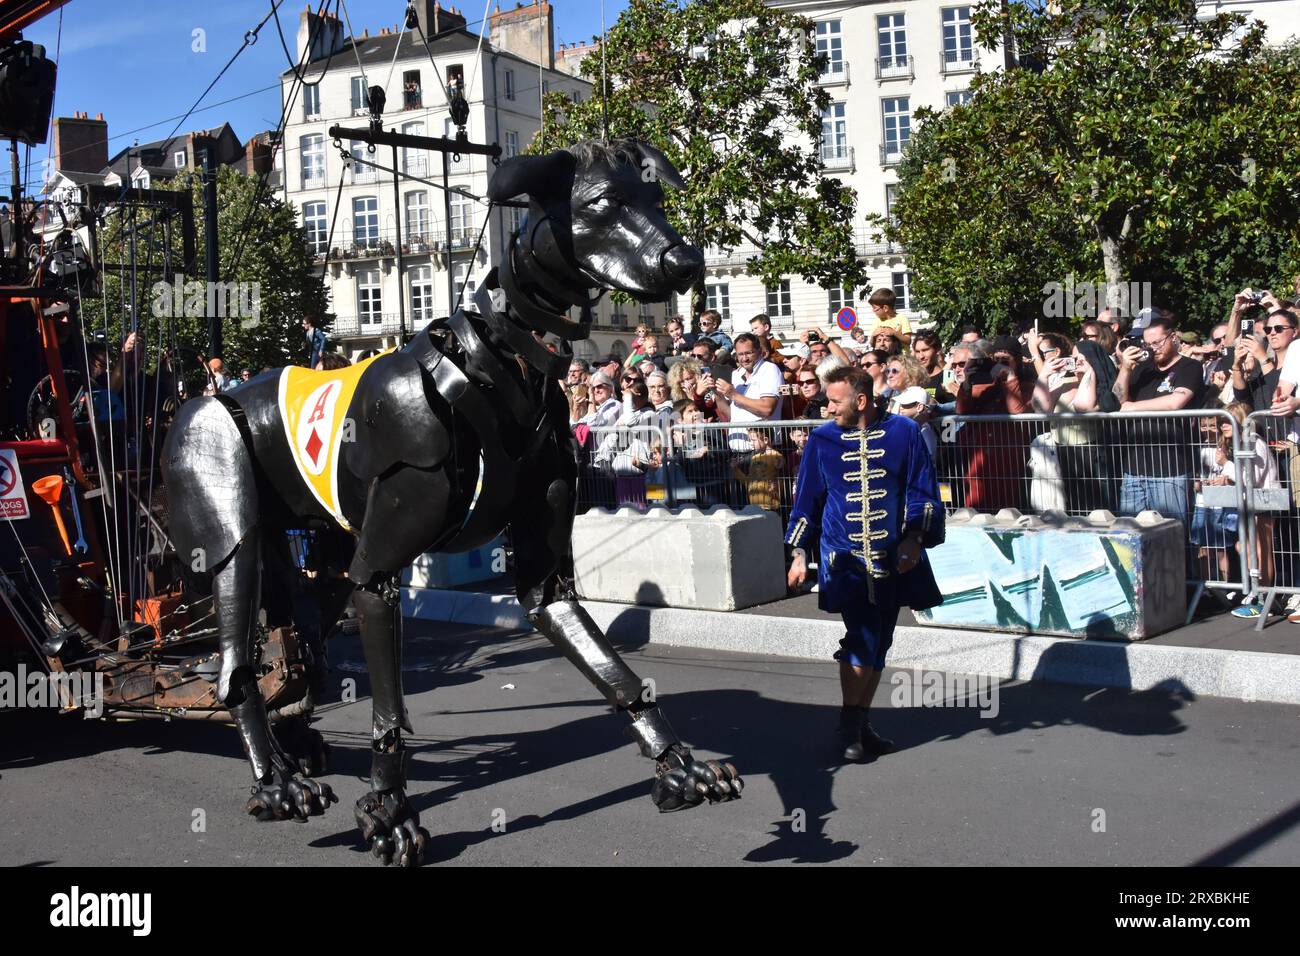 Parade Royal de Luxe, Giant muppet Xolo the dog, Nantes France Stock Photo